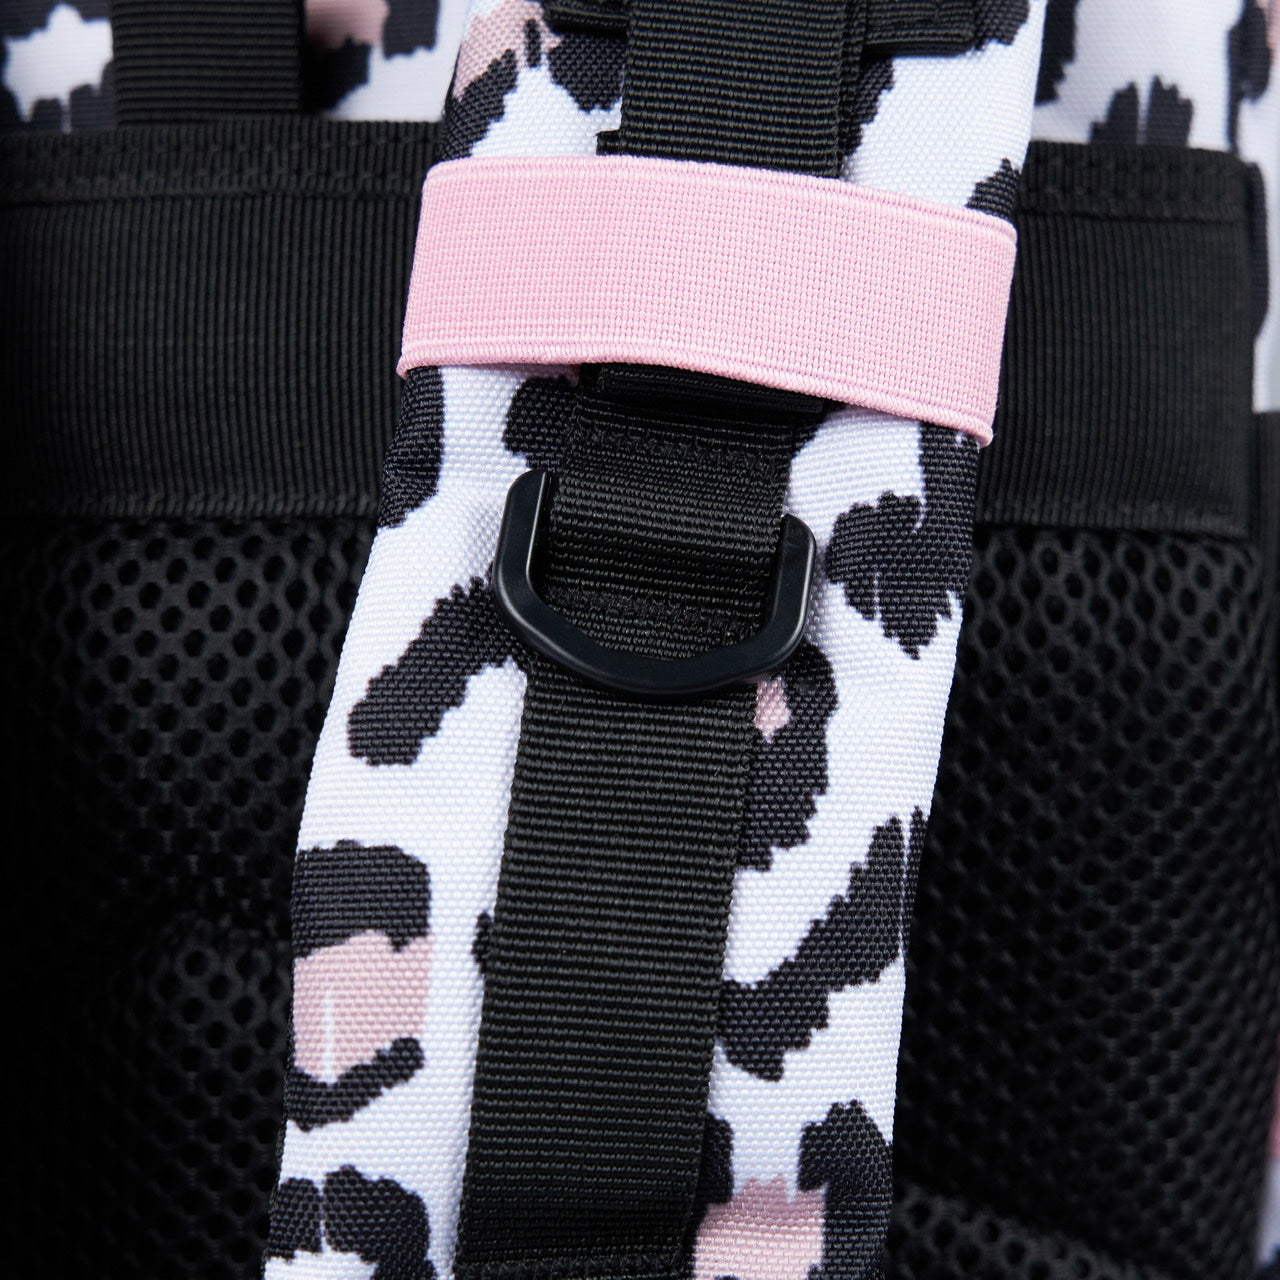 25L Backpack Leopard Pink